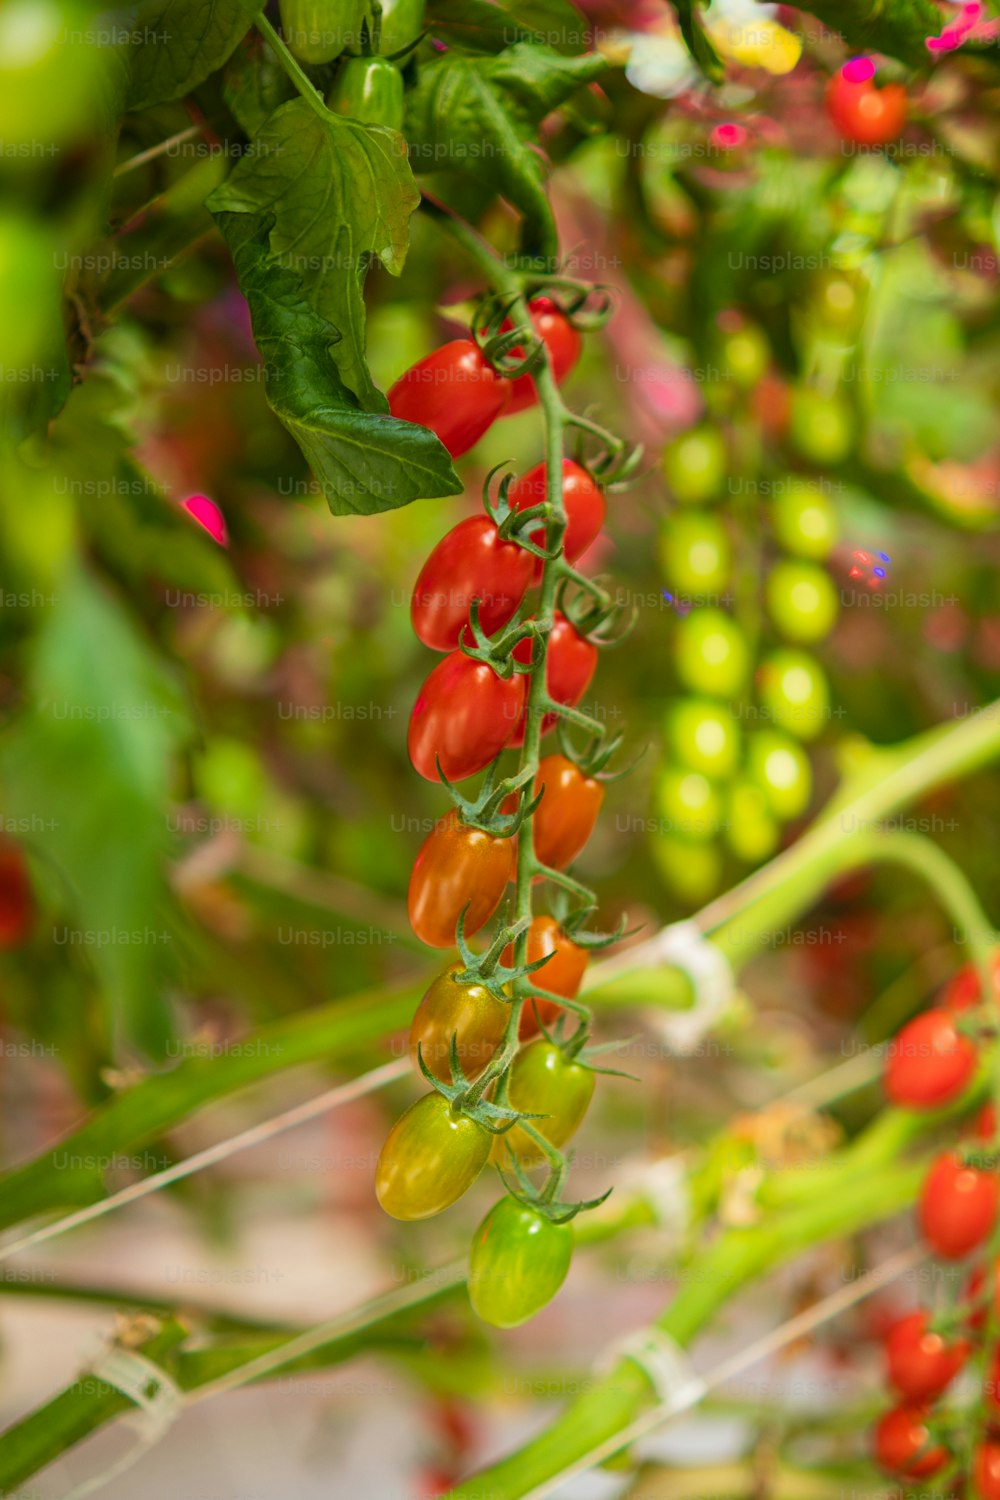 Un montón de tomates rojos y verdes colgando de una planta